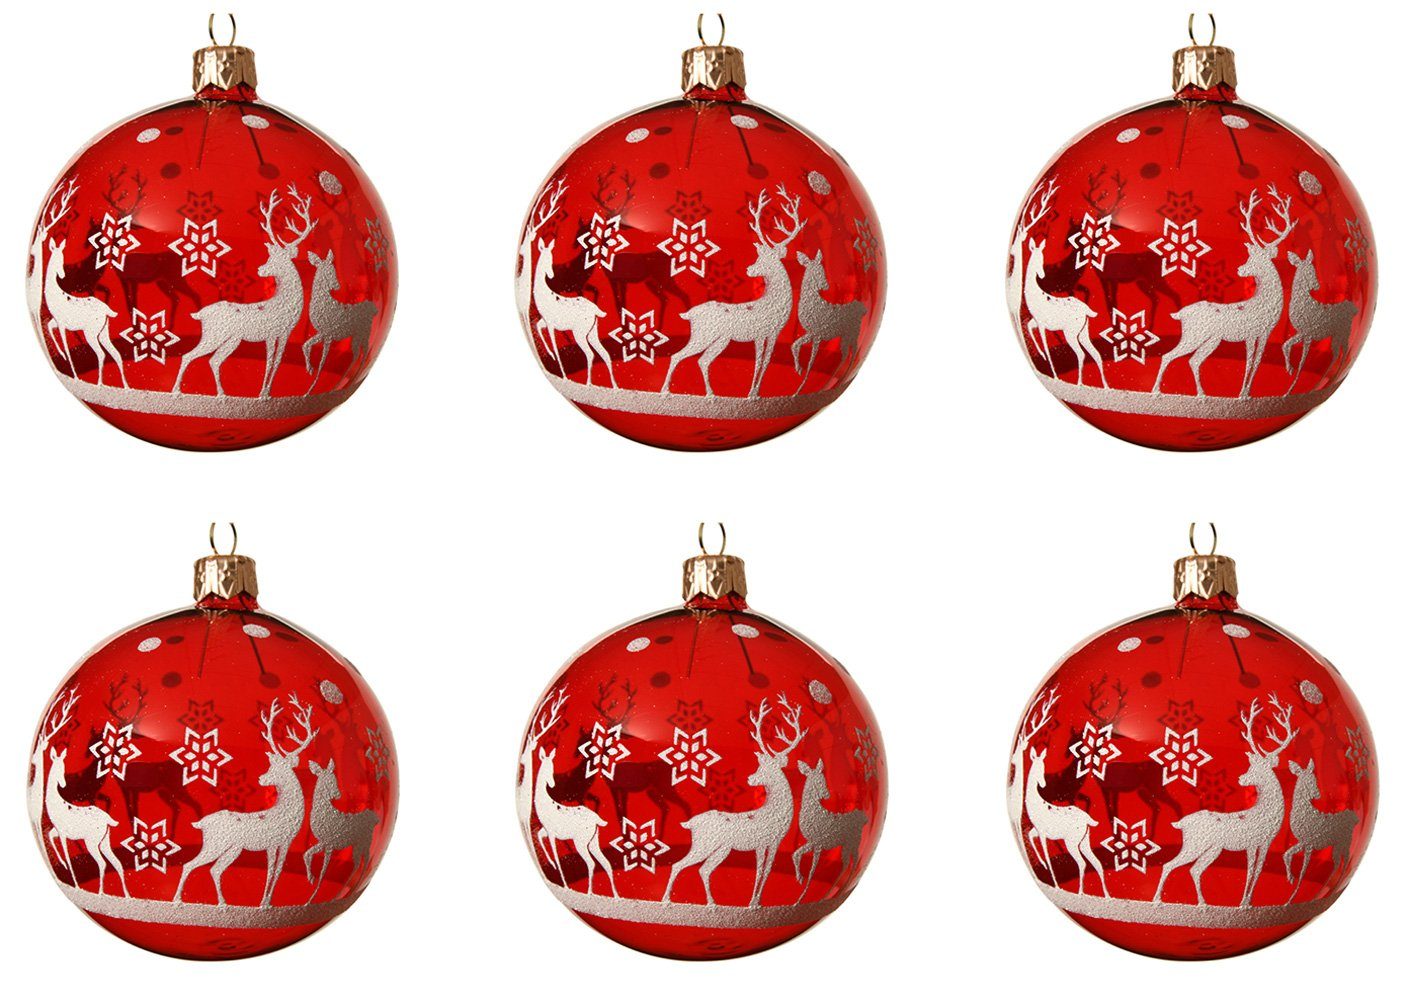 Decoris season decorations Weihnachtsbaumkugel, Weihnachtskugeln Glas 8cm Motiv Rentiere 6er Set - Rot transparent